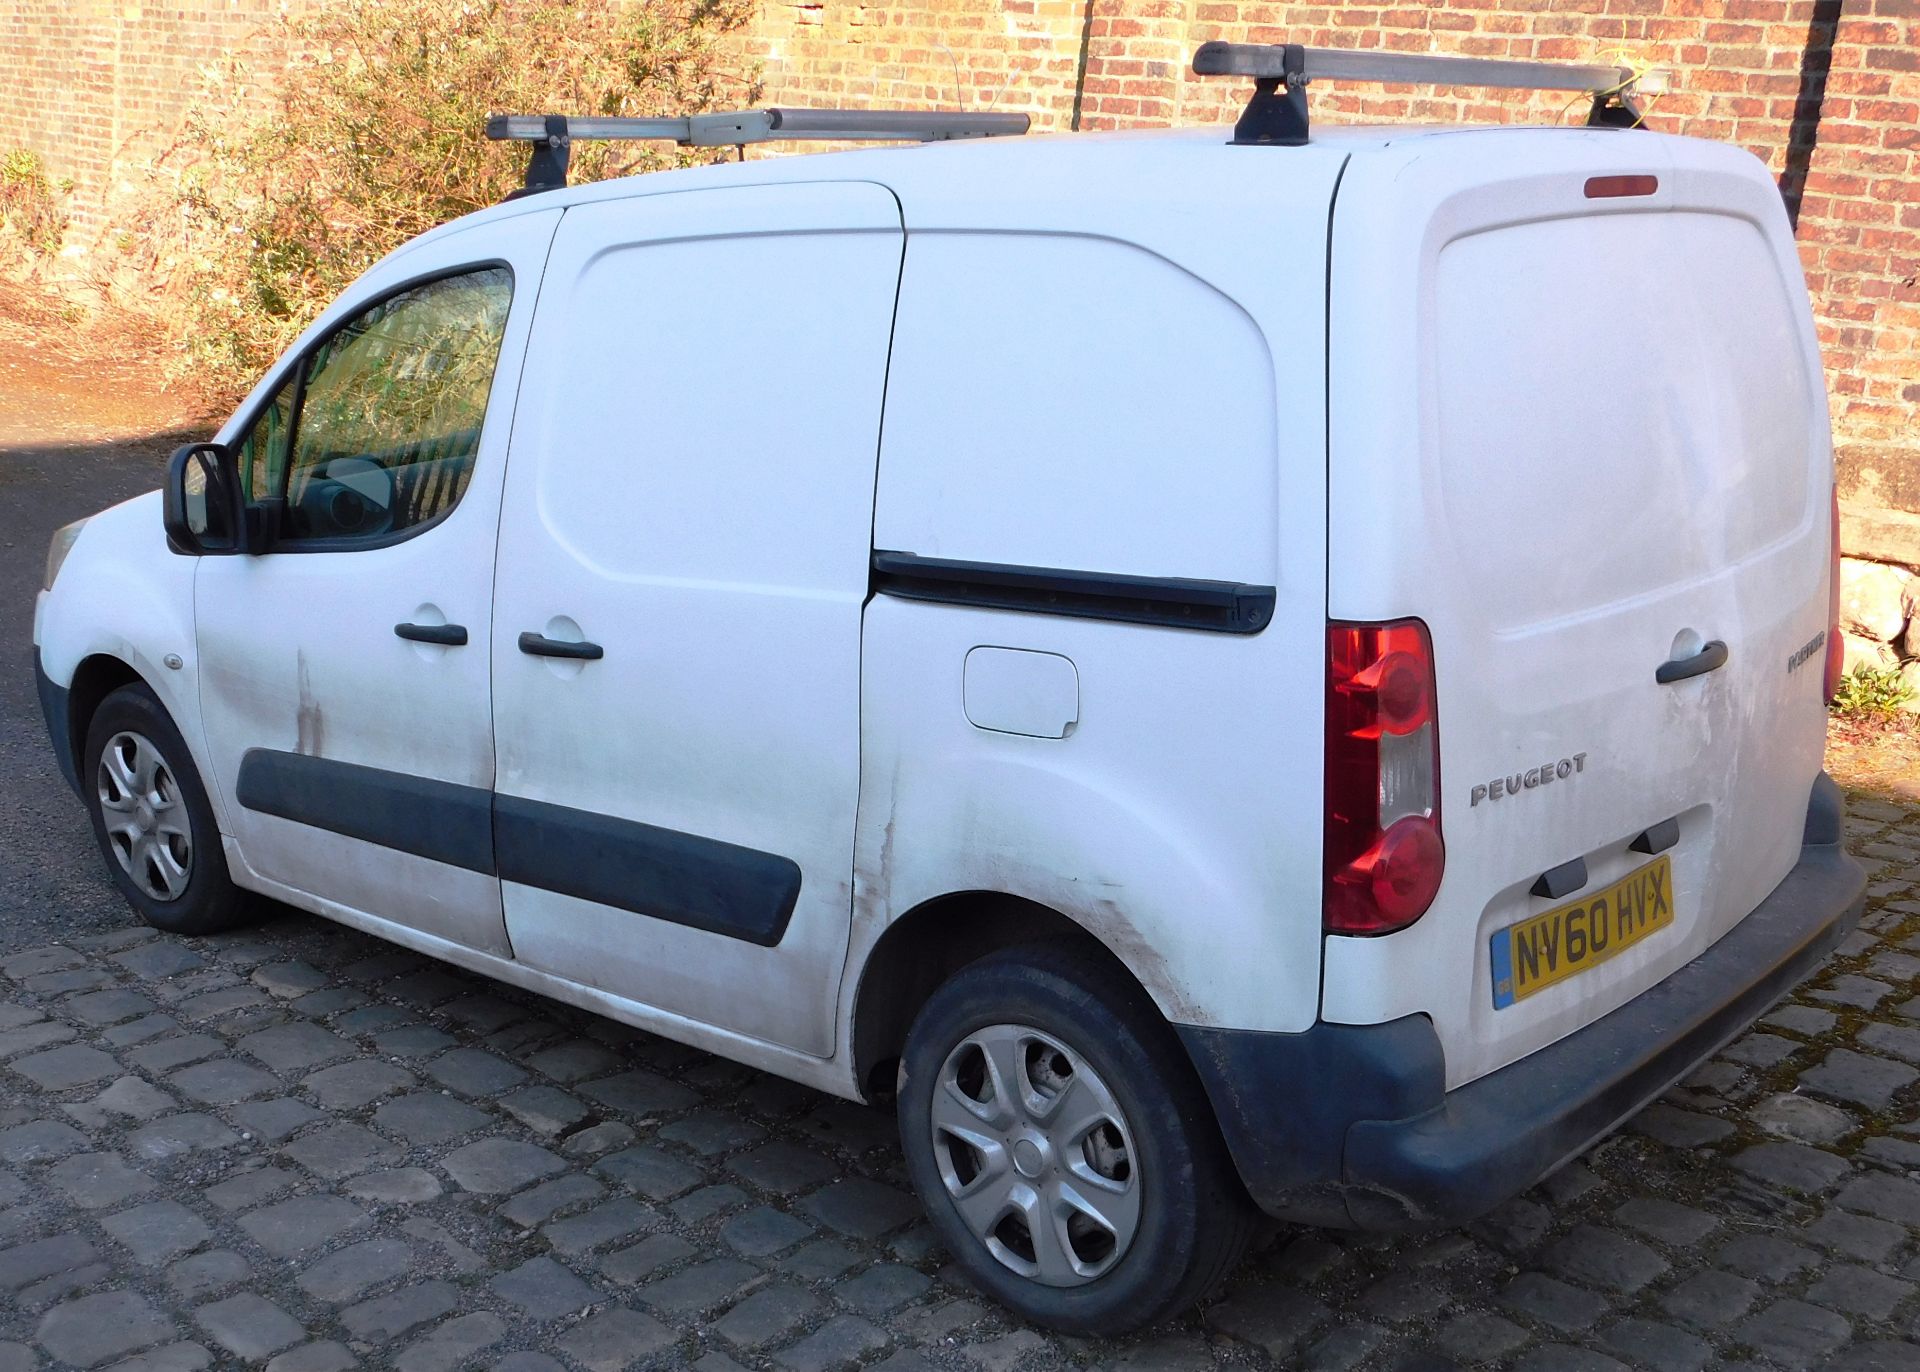 Peugeot Partner L1 850 S 1.6 HDi 90 panel van, registration NV60 HVX, first registered 17 December - Image 3 of 14